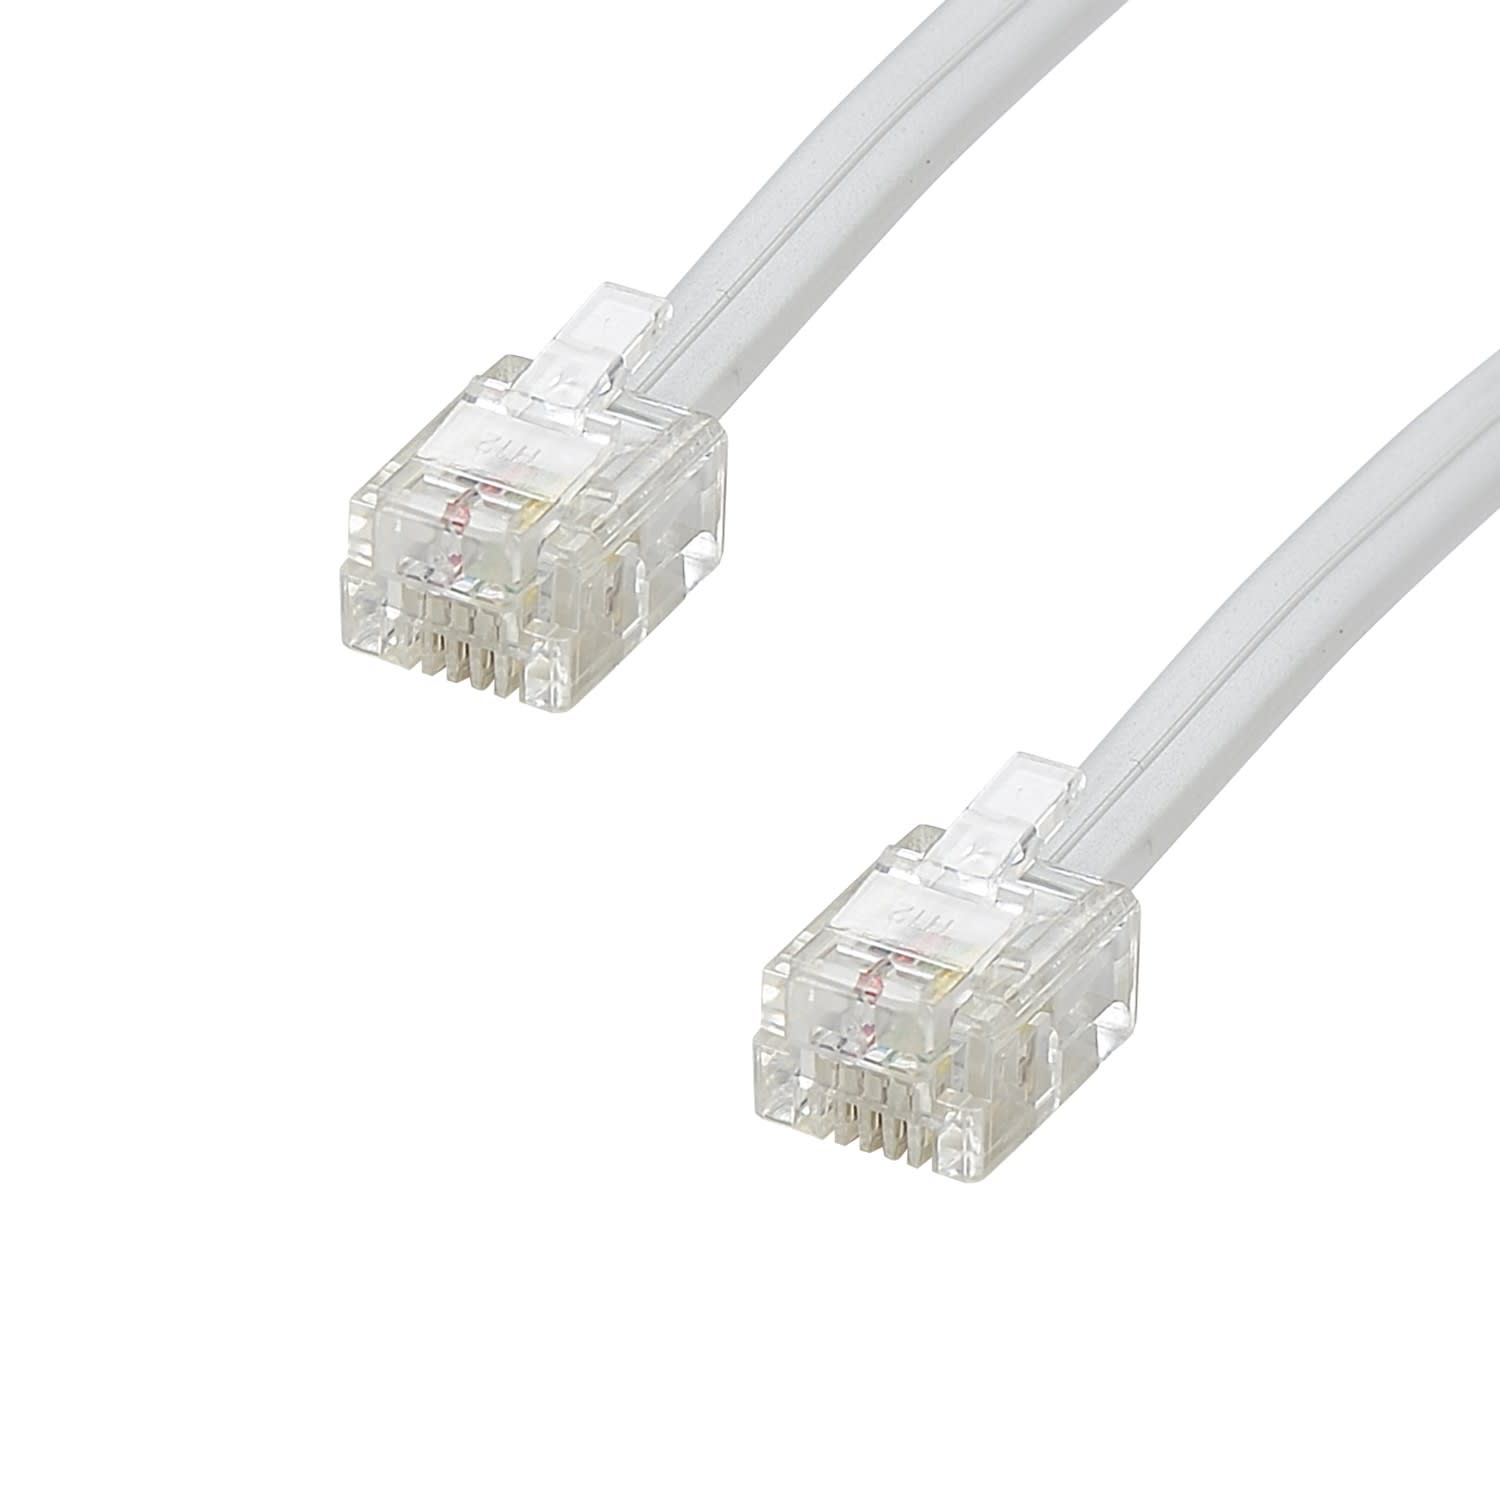 Erard - Cordon RJ11 - 10m - M/M - haut-débit ADSL - gaine pvc plate blanche